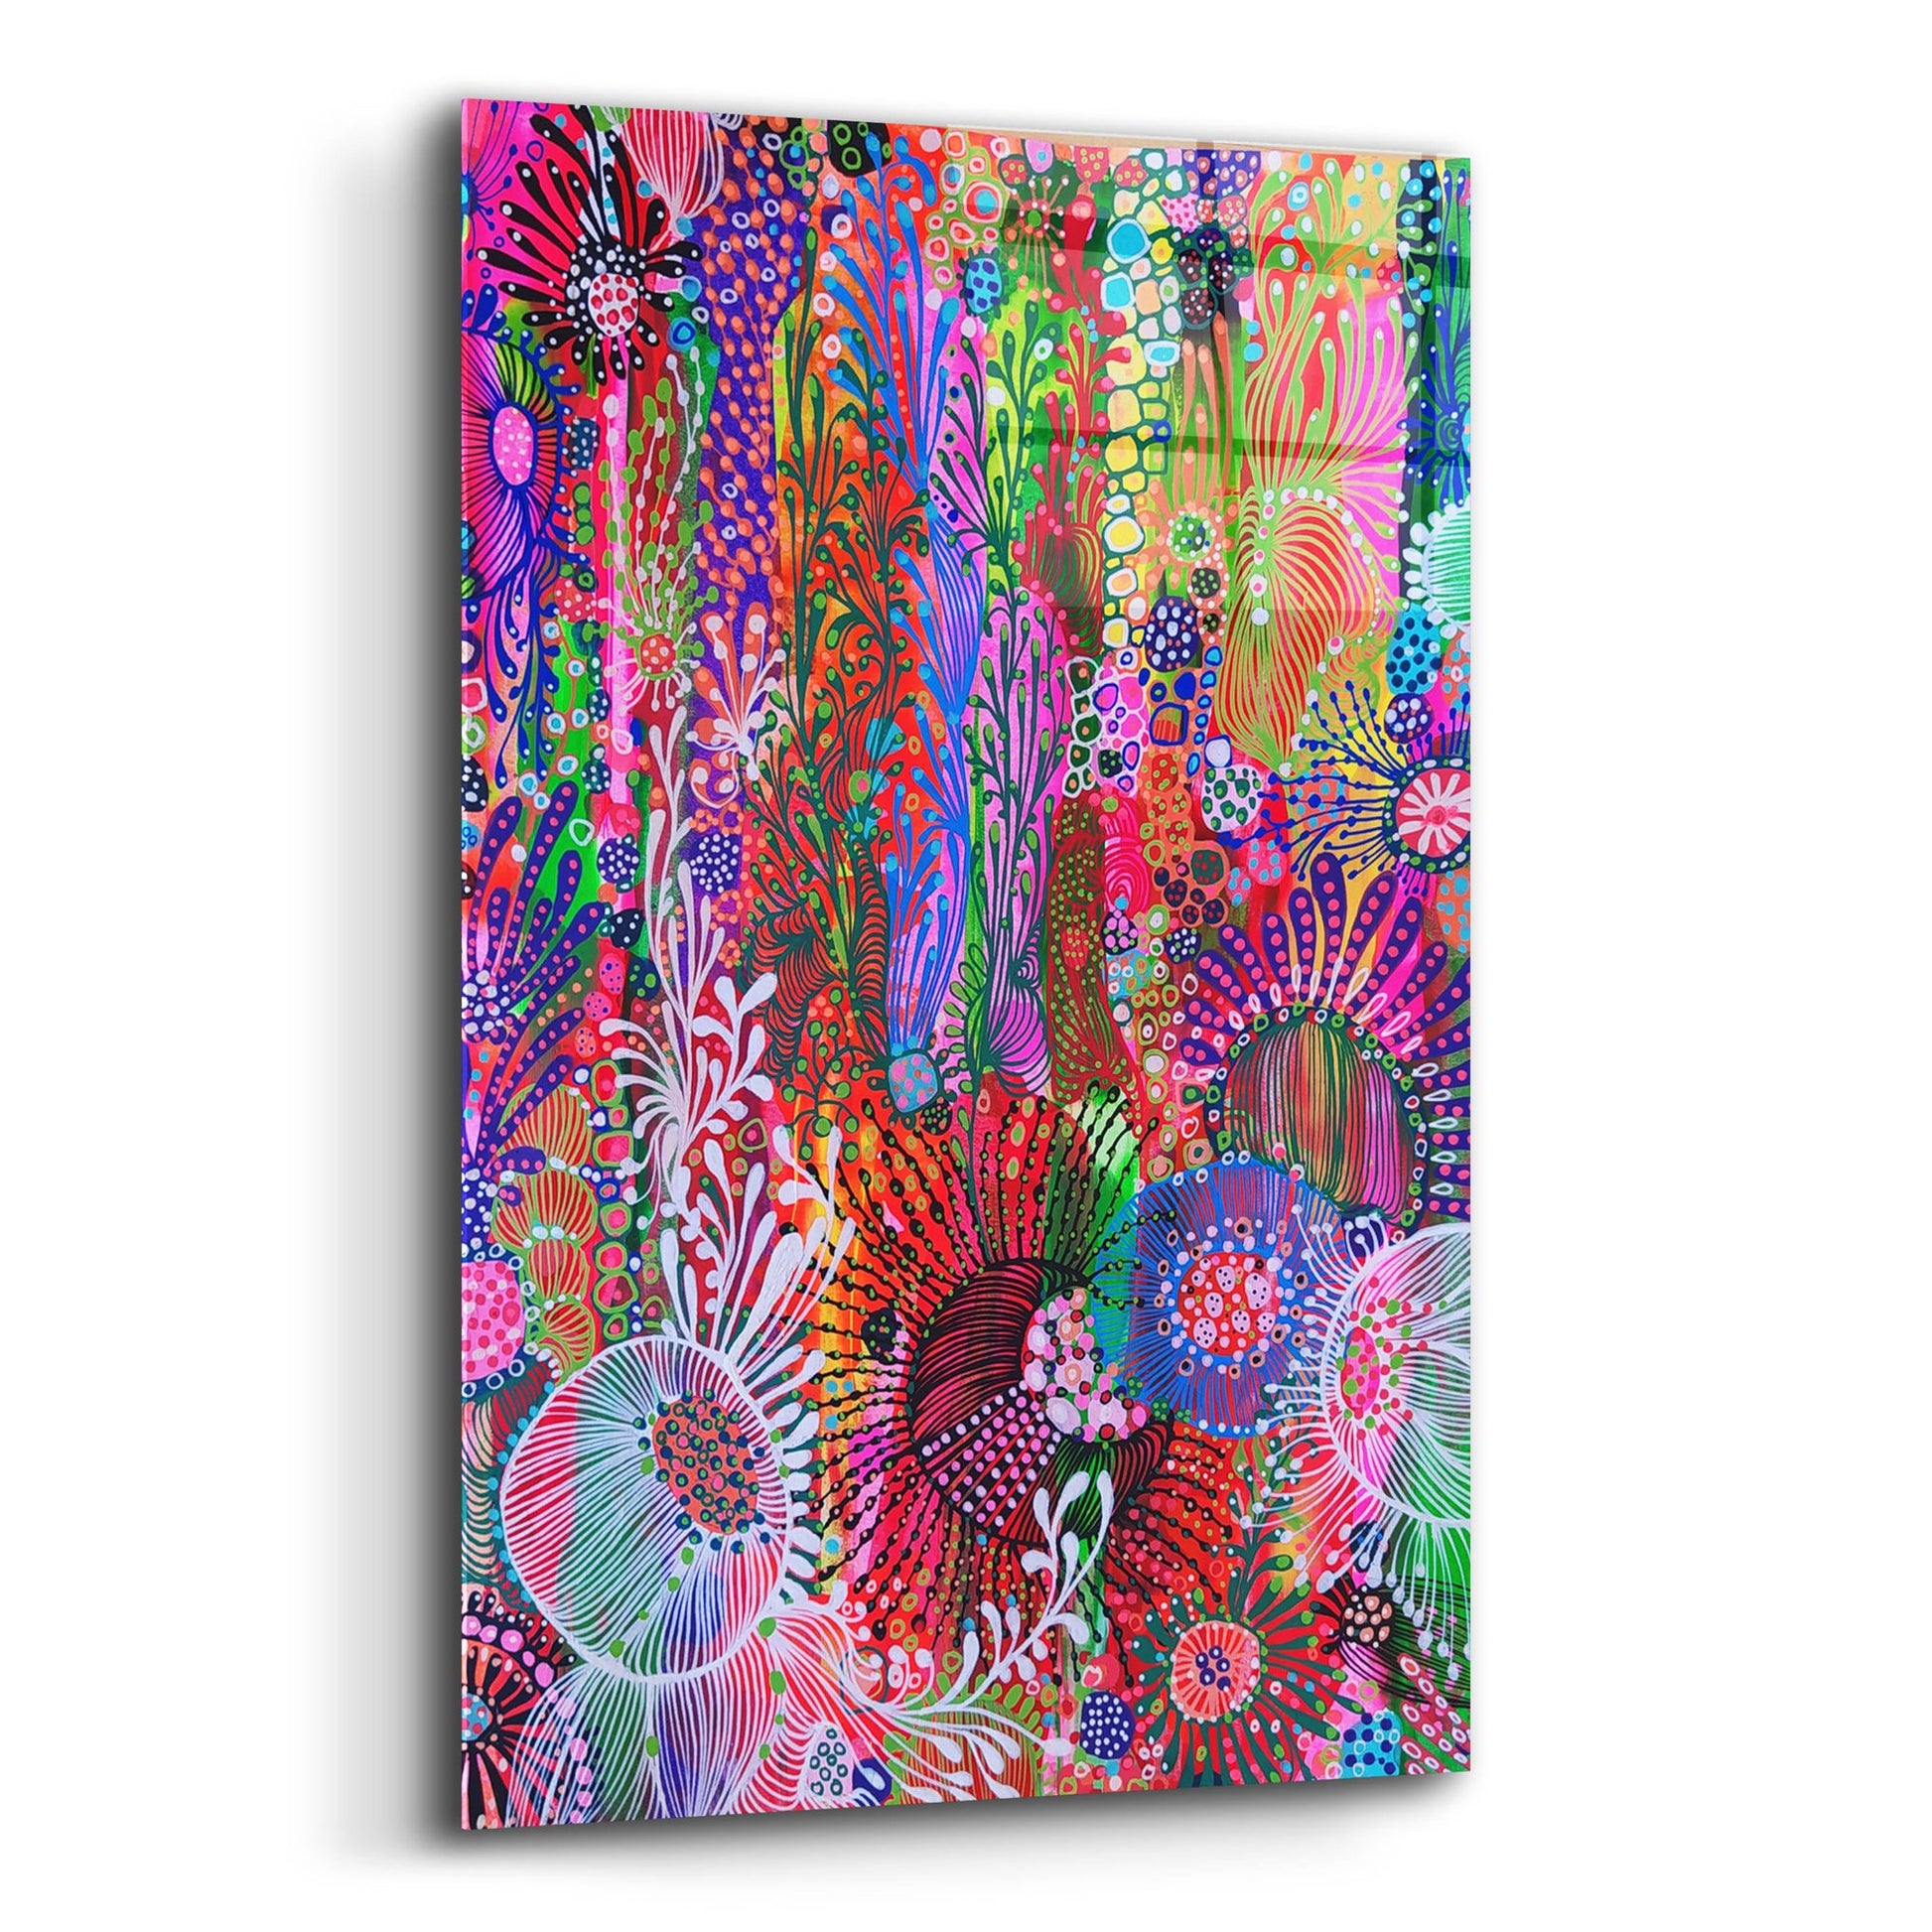 Epic Art 'Color Block2 by Noemi Ibarz, Acrylic Glass Wall Art,16x24